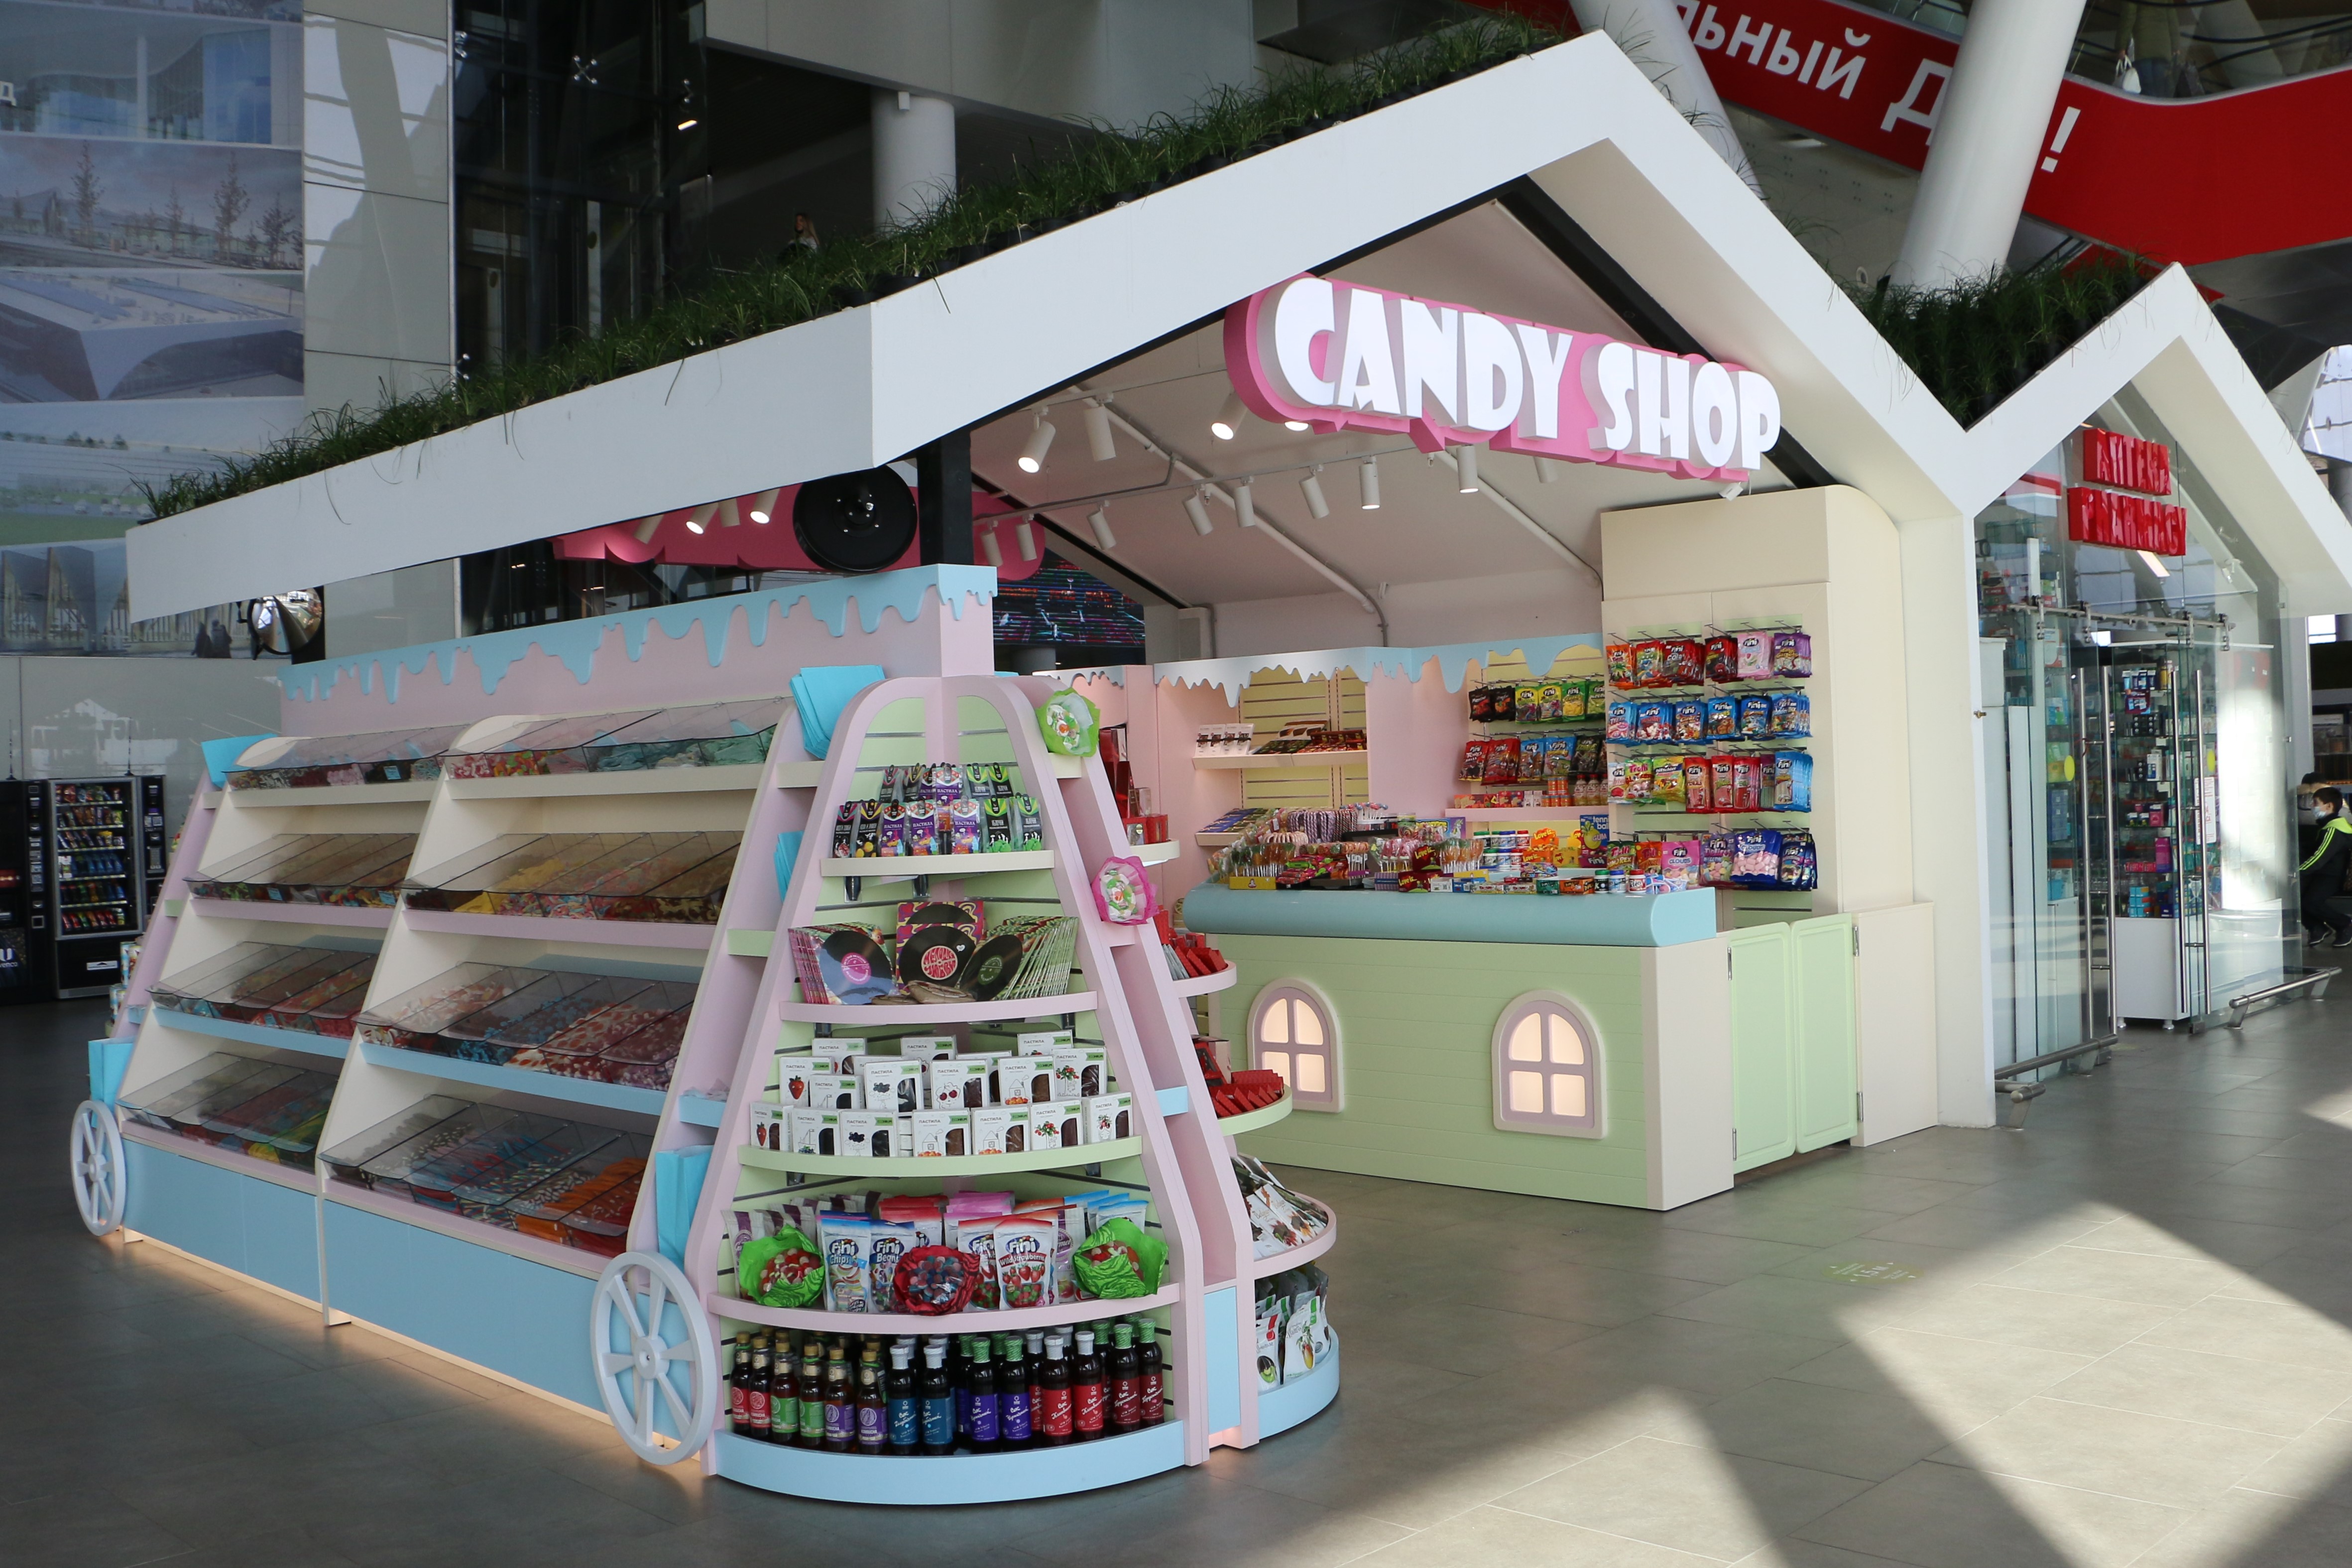 Candy shop 3. Candy shop магазин сладостей. Магазин конфет в аэропорту. В аэропортах сладости. Candy shop СПБ.